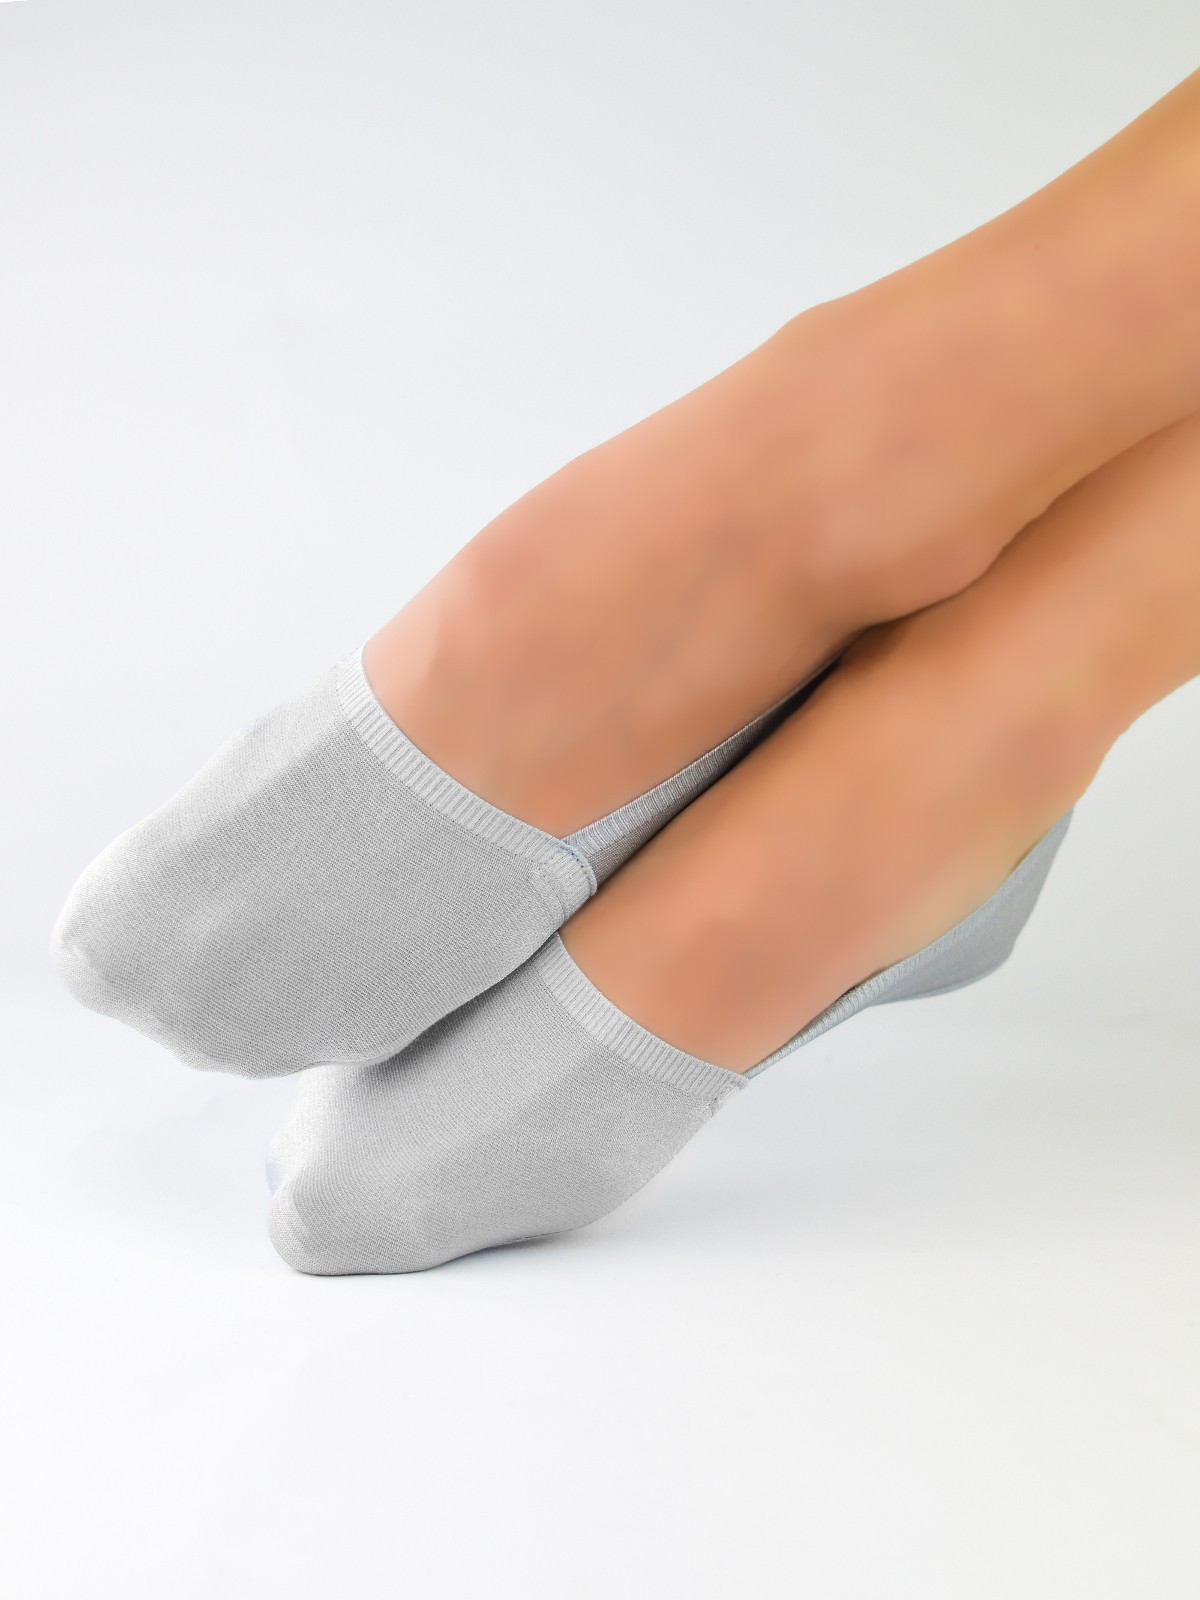 Dámské ponožky - baleríny Noviti SN024 Laserové, Silikon, ABS šedá 36-41